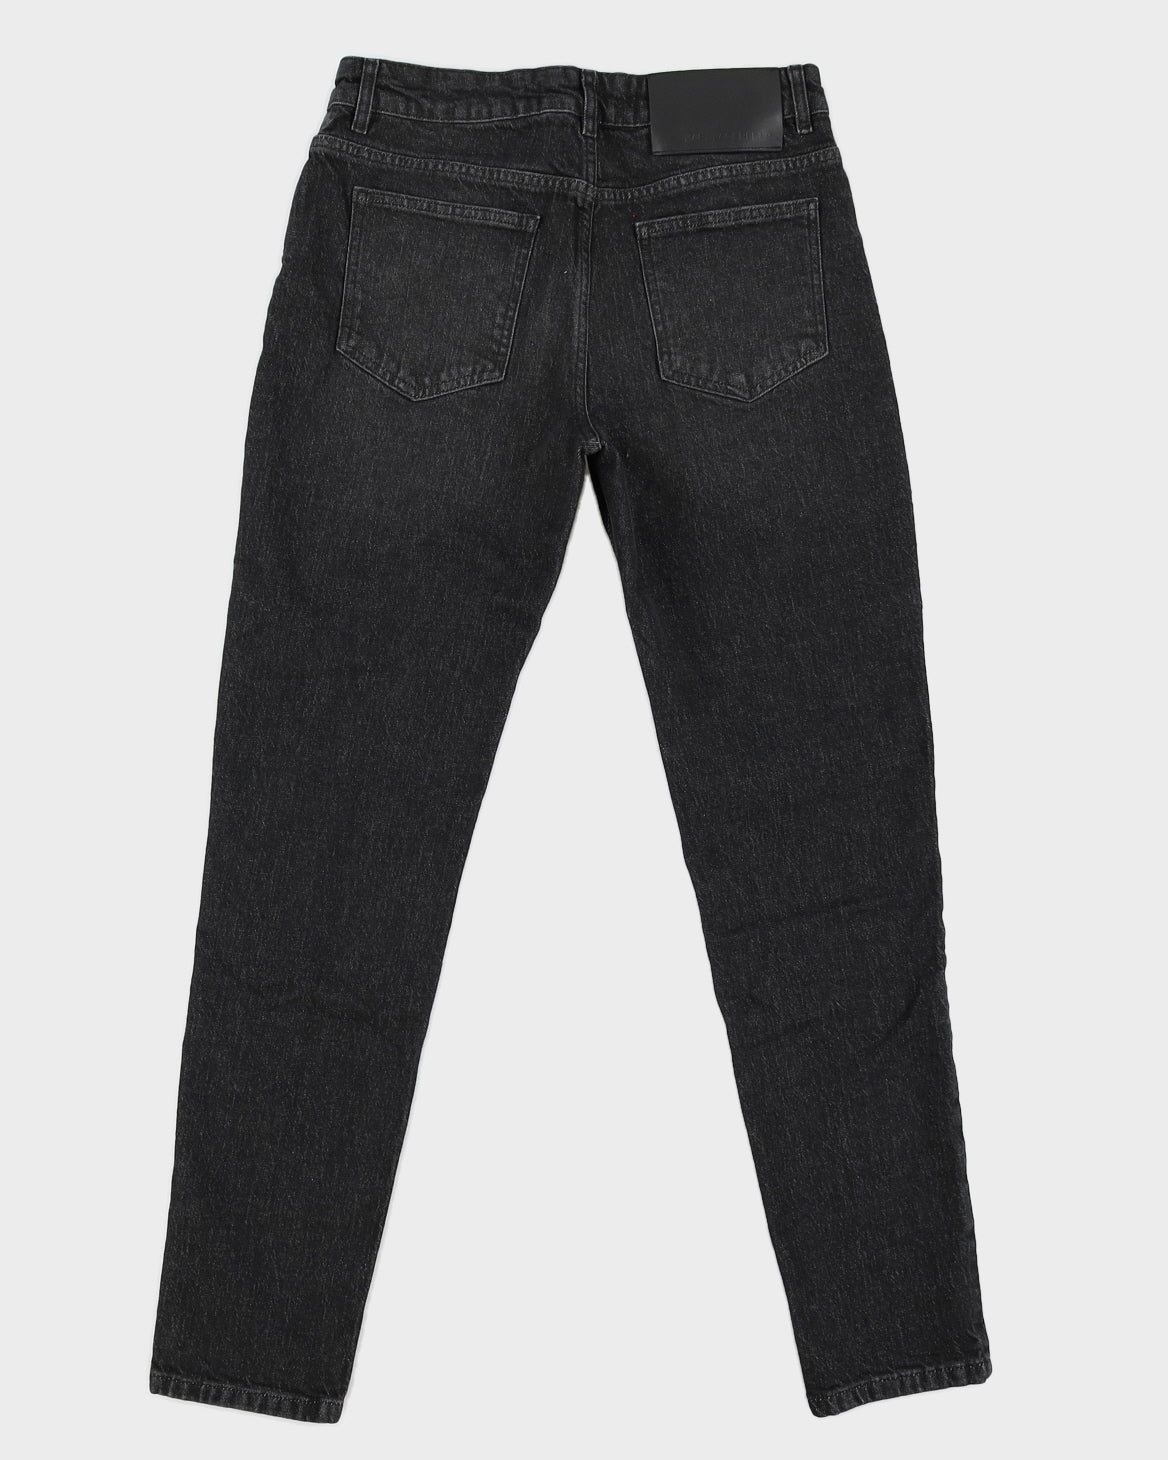 Karl Lagerfeld Skinny Black Jeans - S